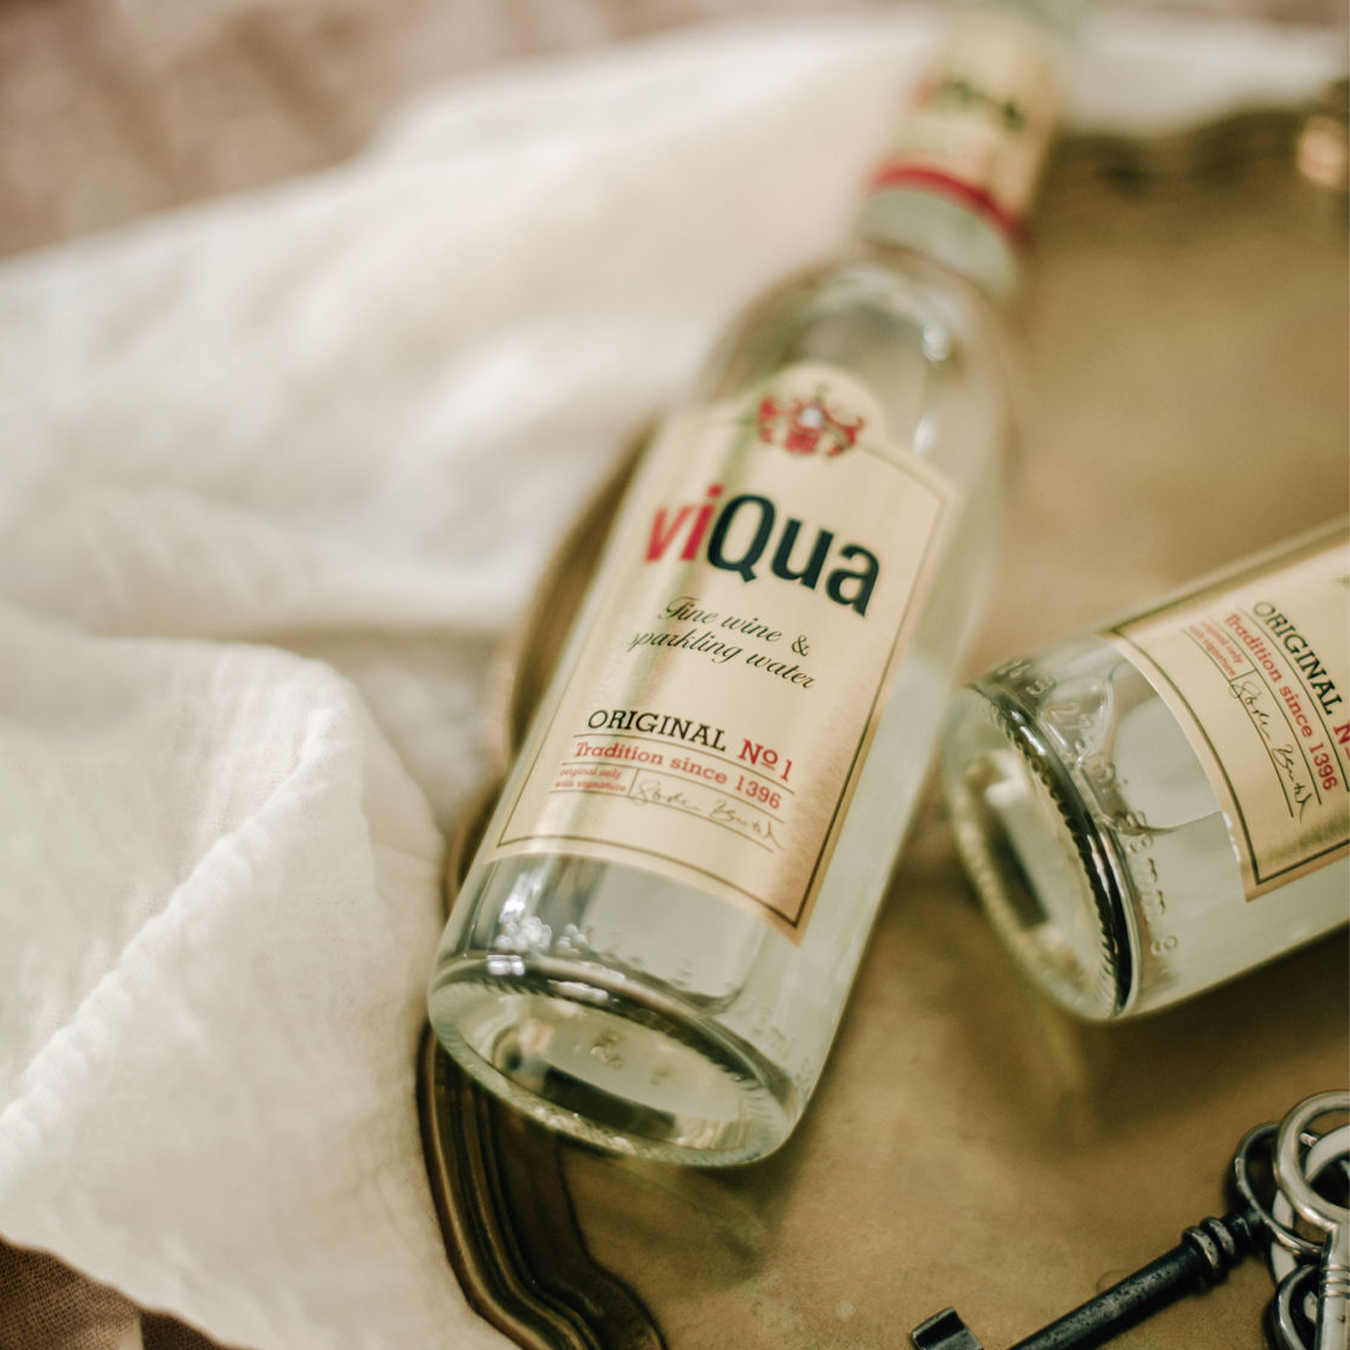 viQua - fine wine and sparkling water